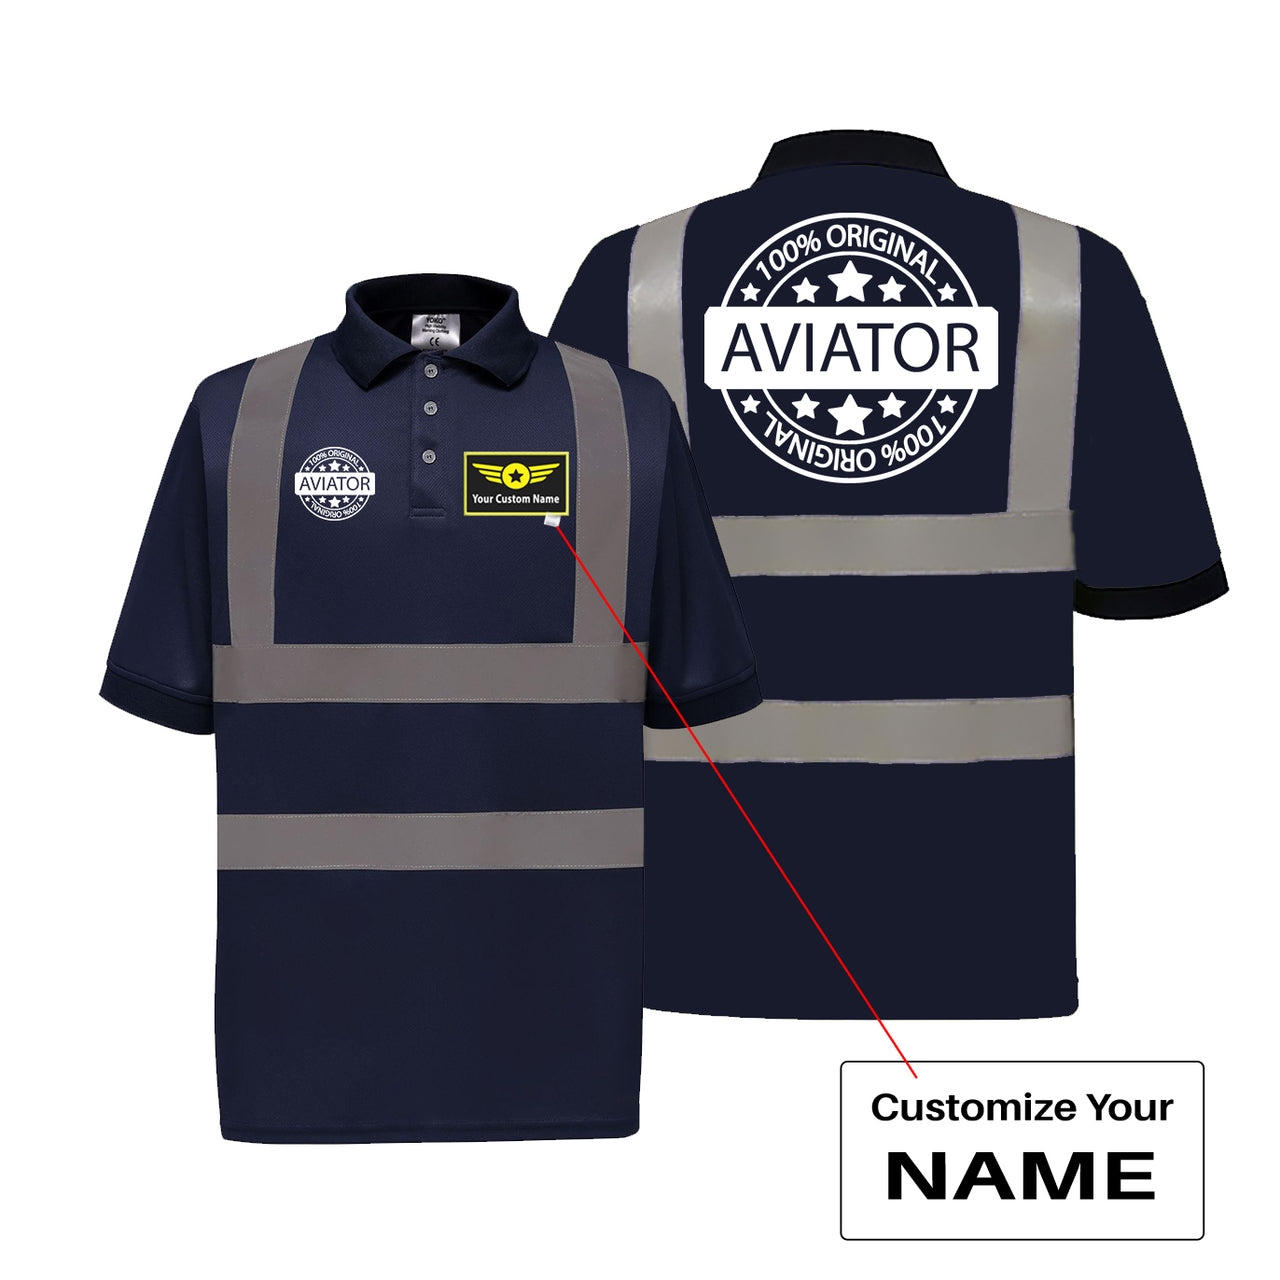 %100 Original Aviator Designed Reflective Polo T-Shirts